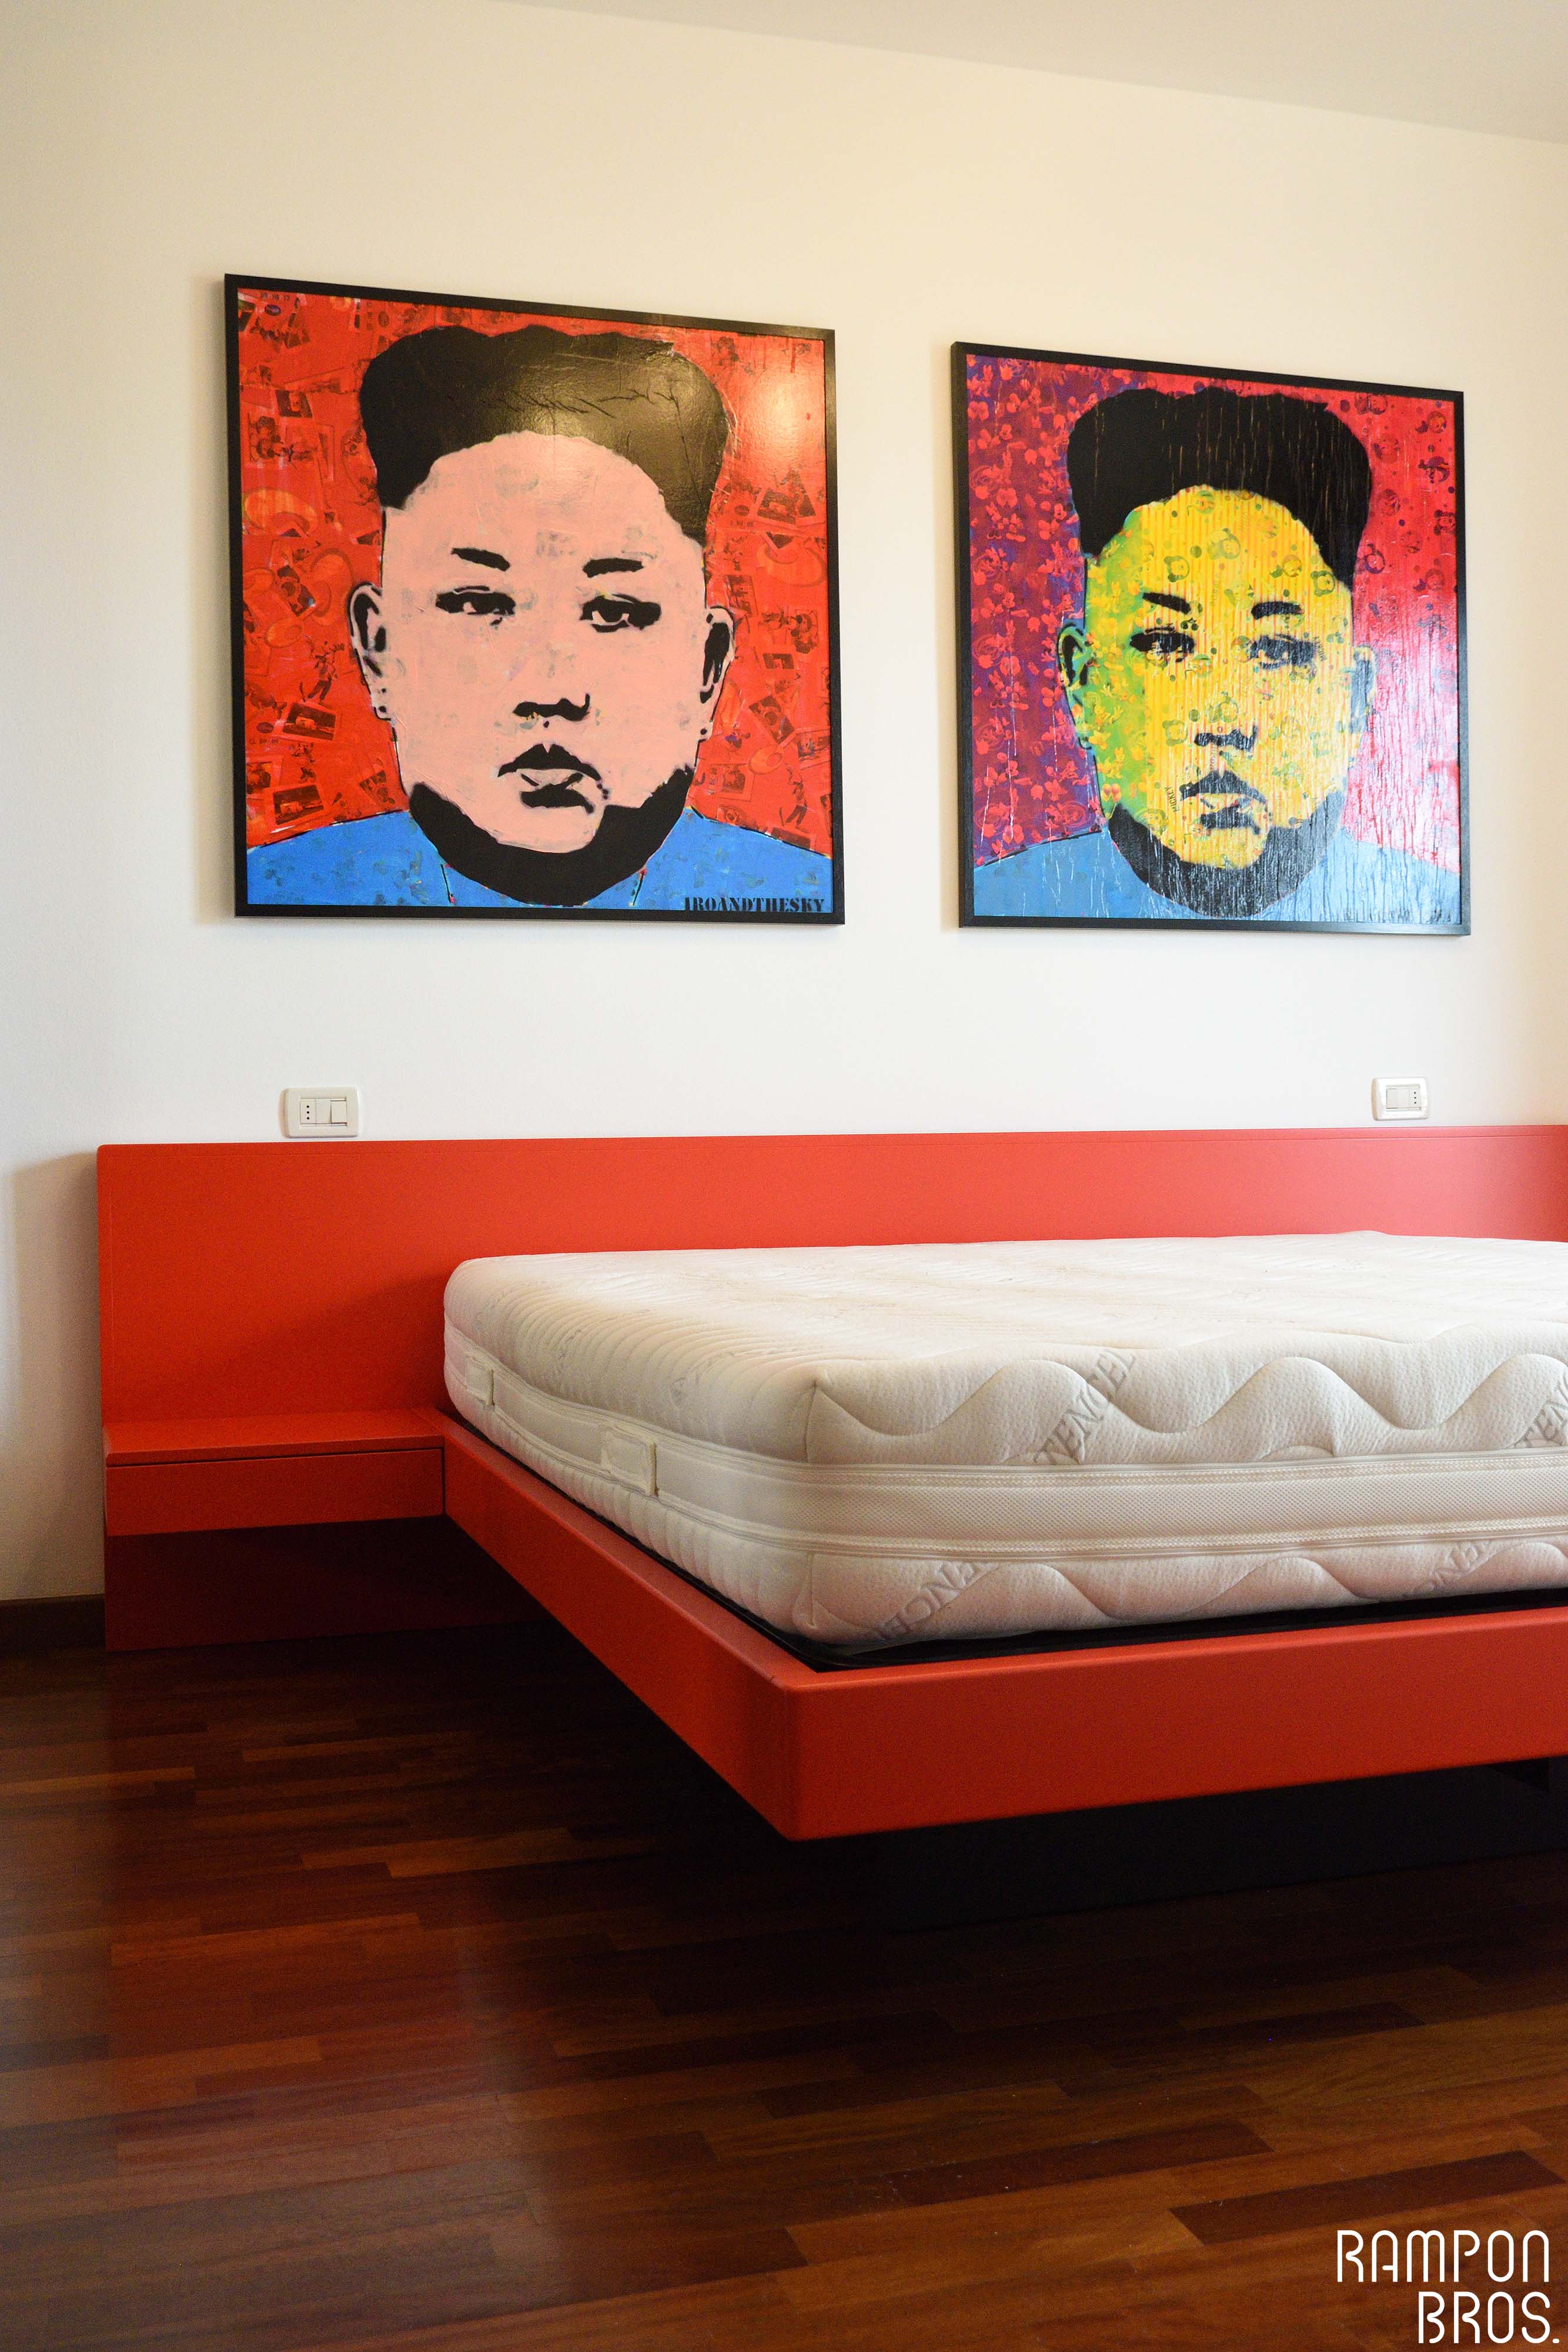 Letto laccato rosso fuoco, quadri d'artista raffiguranti il leader sudcoreano Kim Jong-Un.